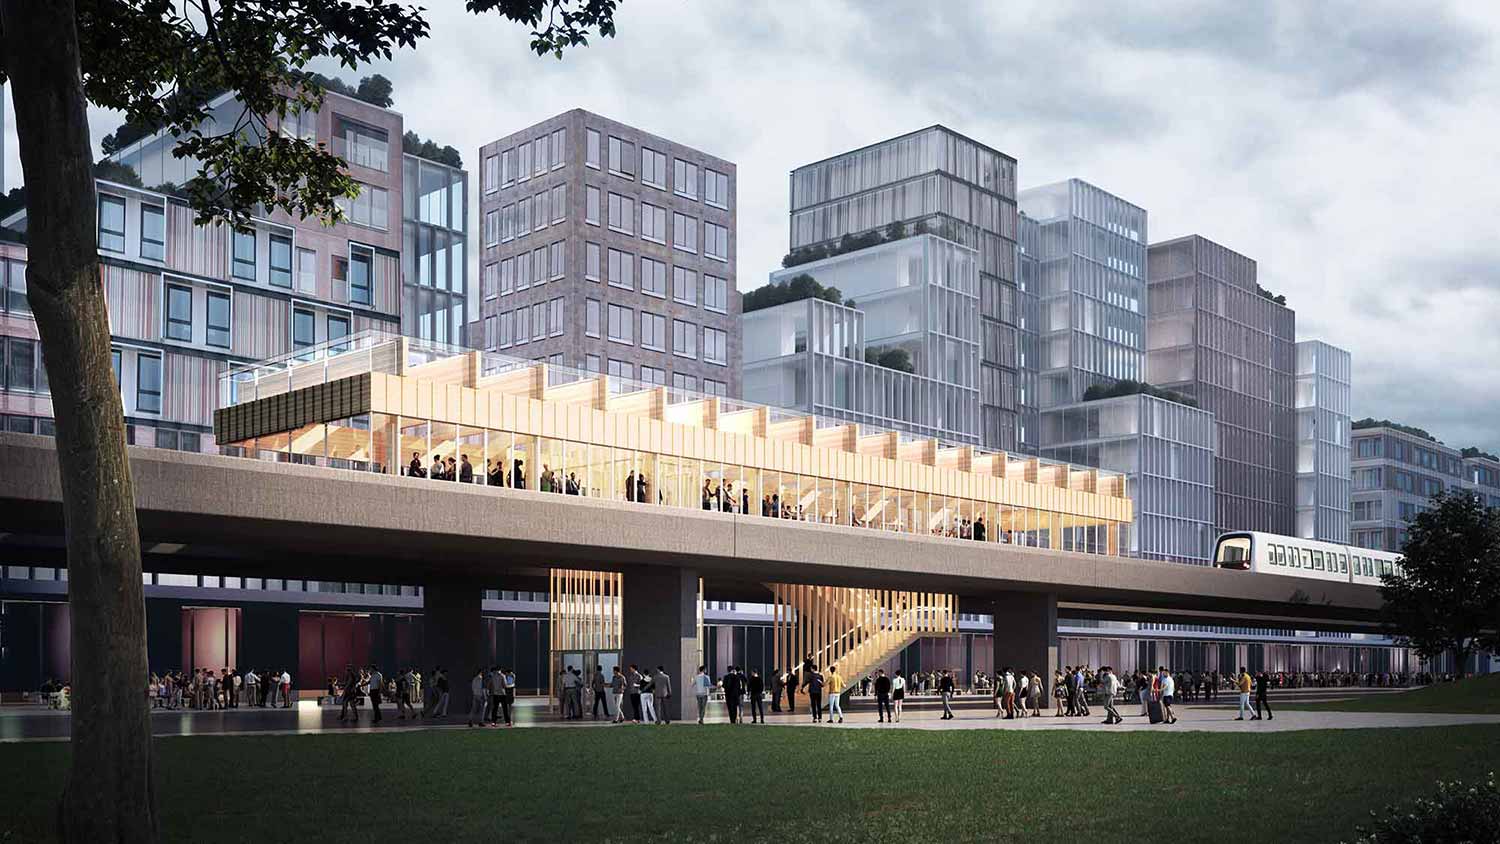 Metroselskabet Timber Station concept